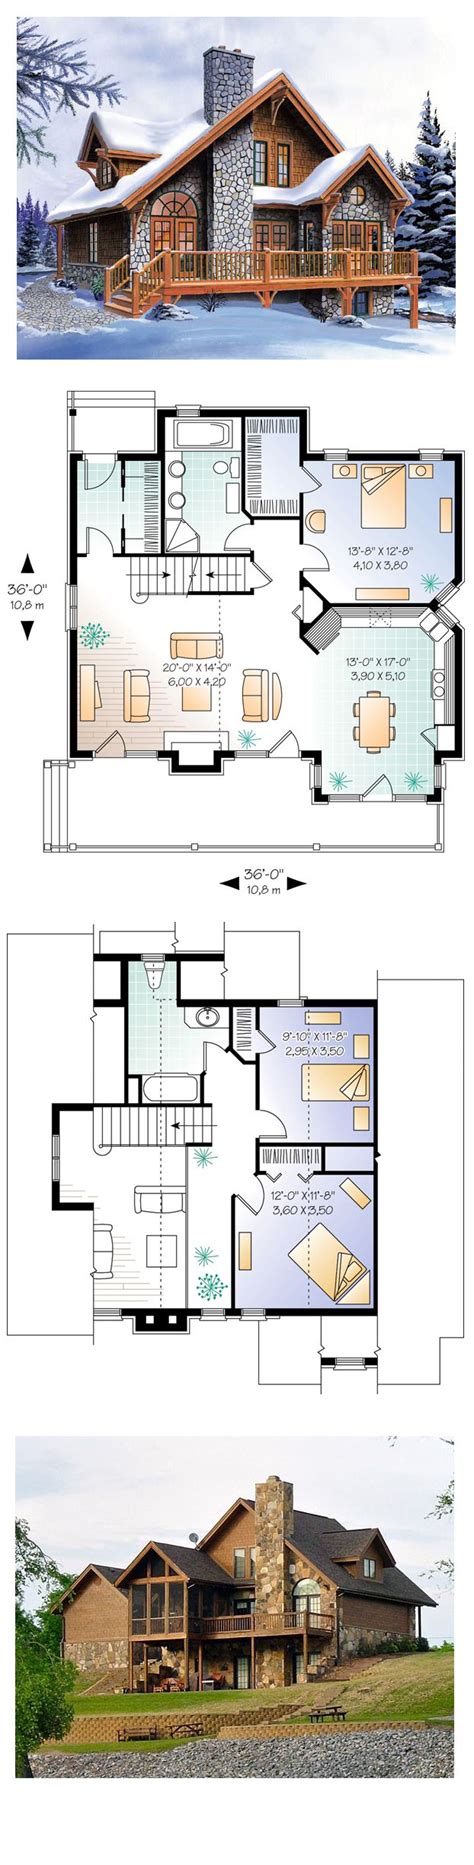 Sims 4 House Plans Blueprints Sims 4 Floor Plans